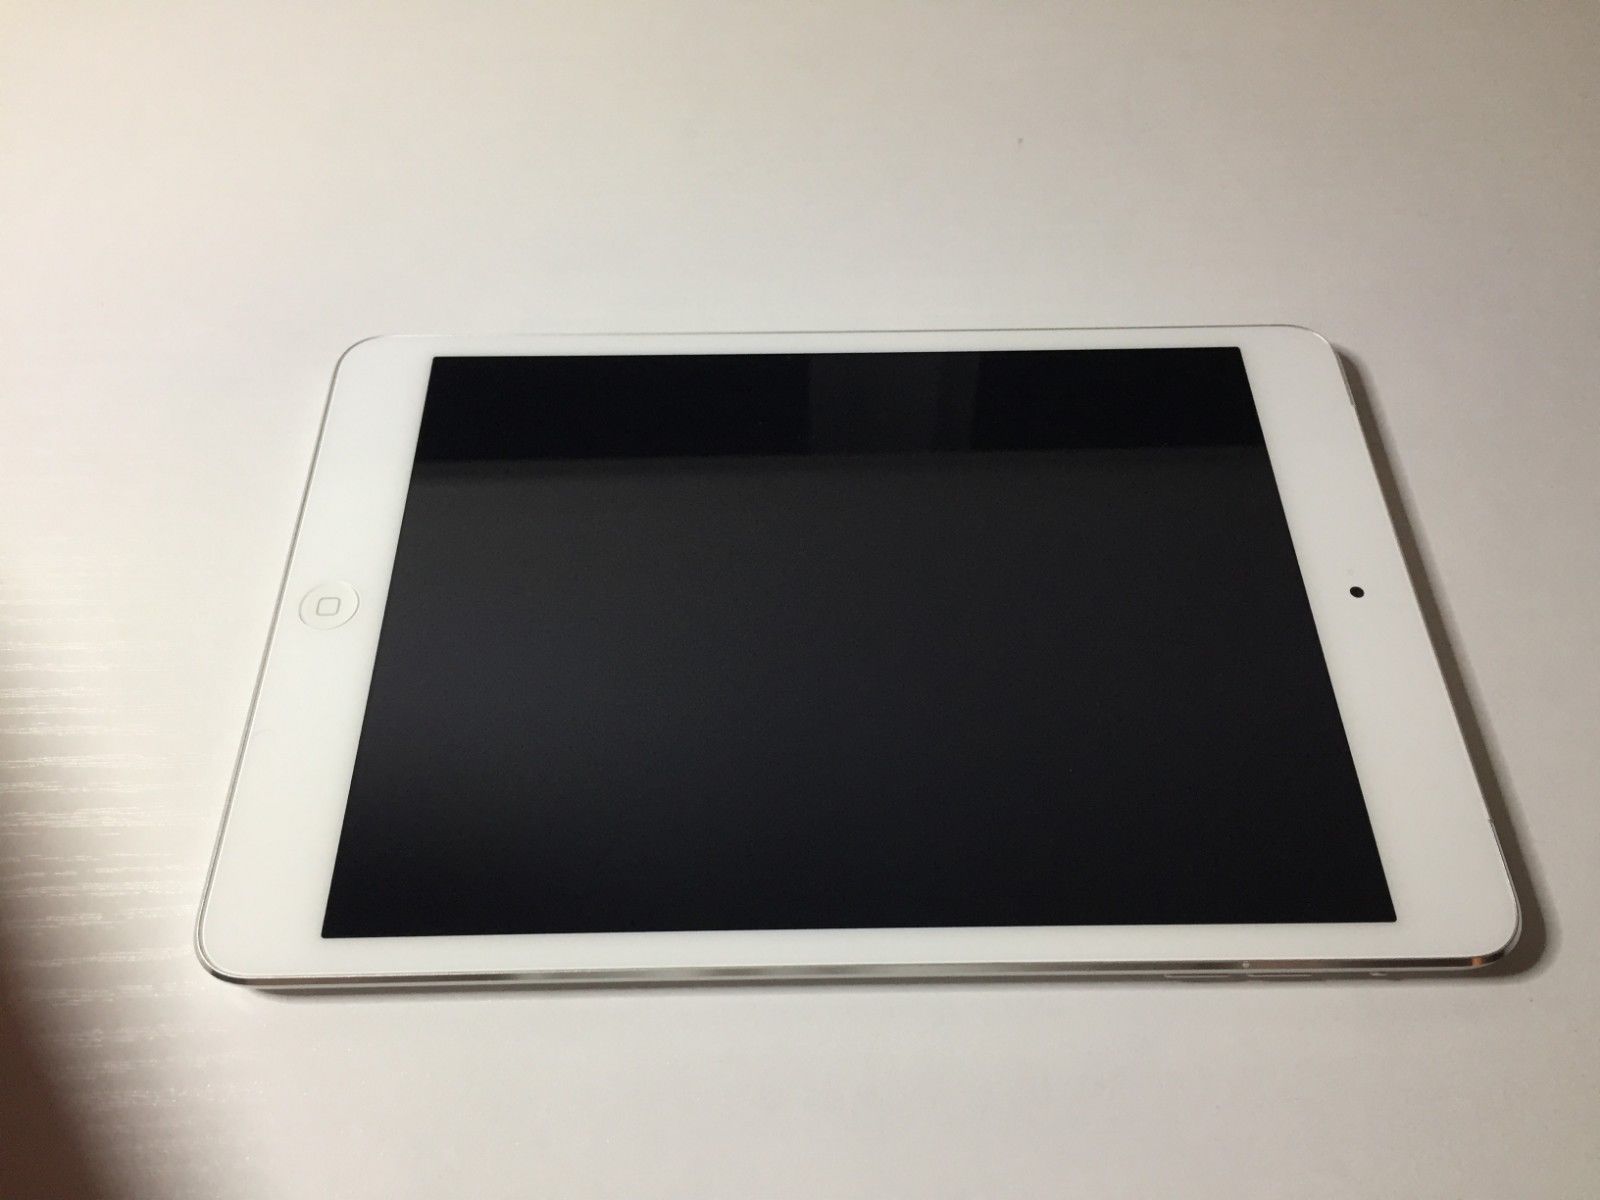 Apple iPad Mini 2 (128GB) Wi-Fi + Cellular Unlocked, 7.9in Retina 